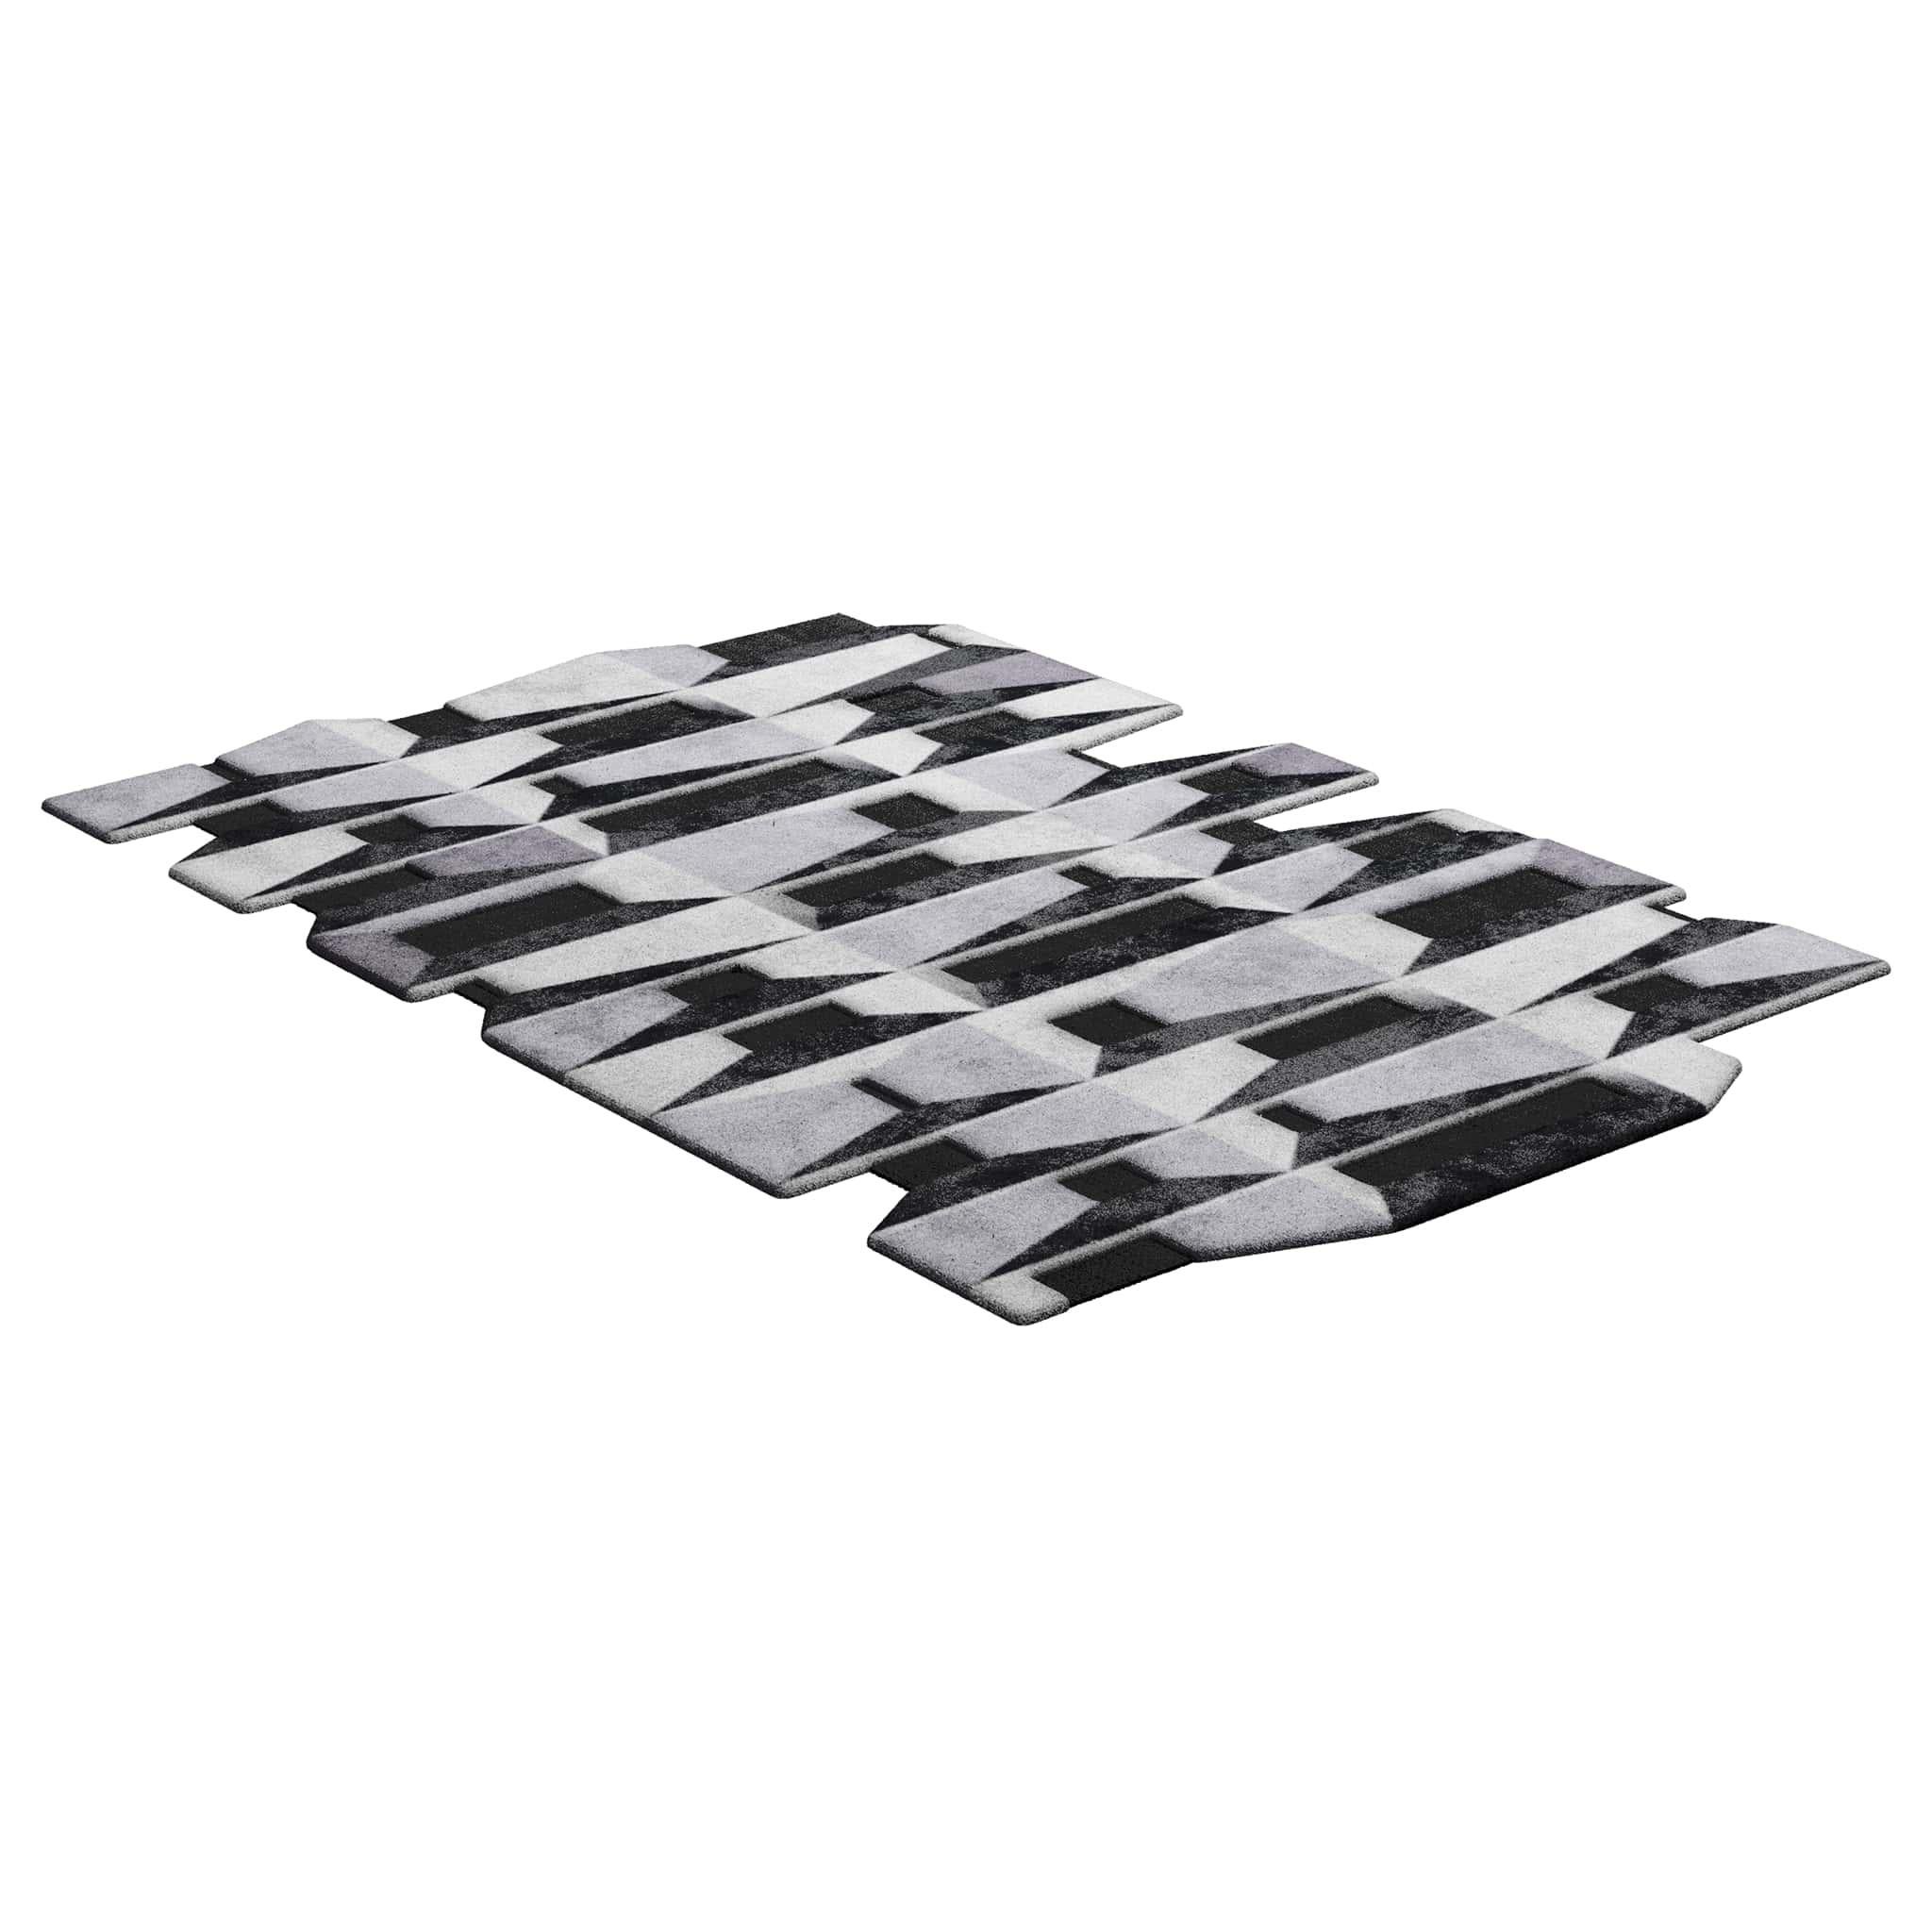 TAPIS Shaped #011 ist ein eklektischer Teppich, der das Flair der Mitte des Jahrhunderts mit dem Stil der Postmoderne verbindet. Dieser Teppich ist handgetuftet und besteht aus 100% botanischer Seide mit einer Dicke von 16 mm. Erhältlich in den